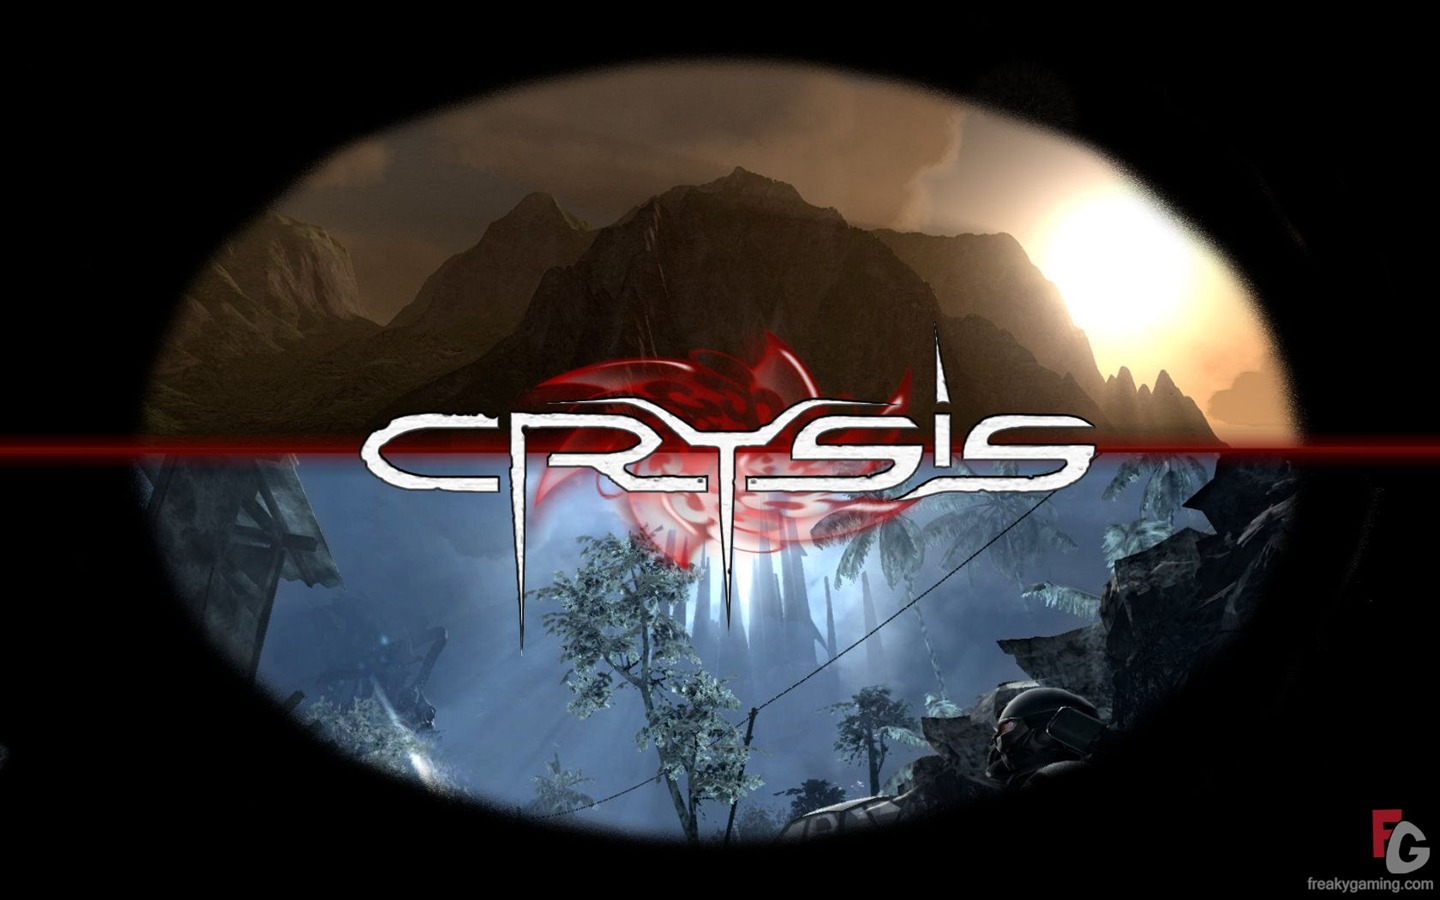  Crysisの壁紙(3) #5 - 1440x900